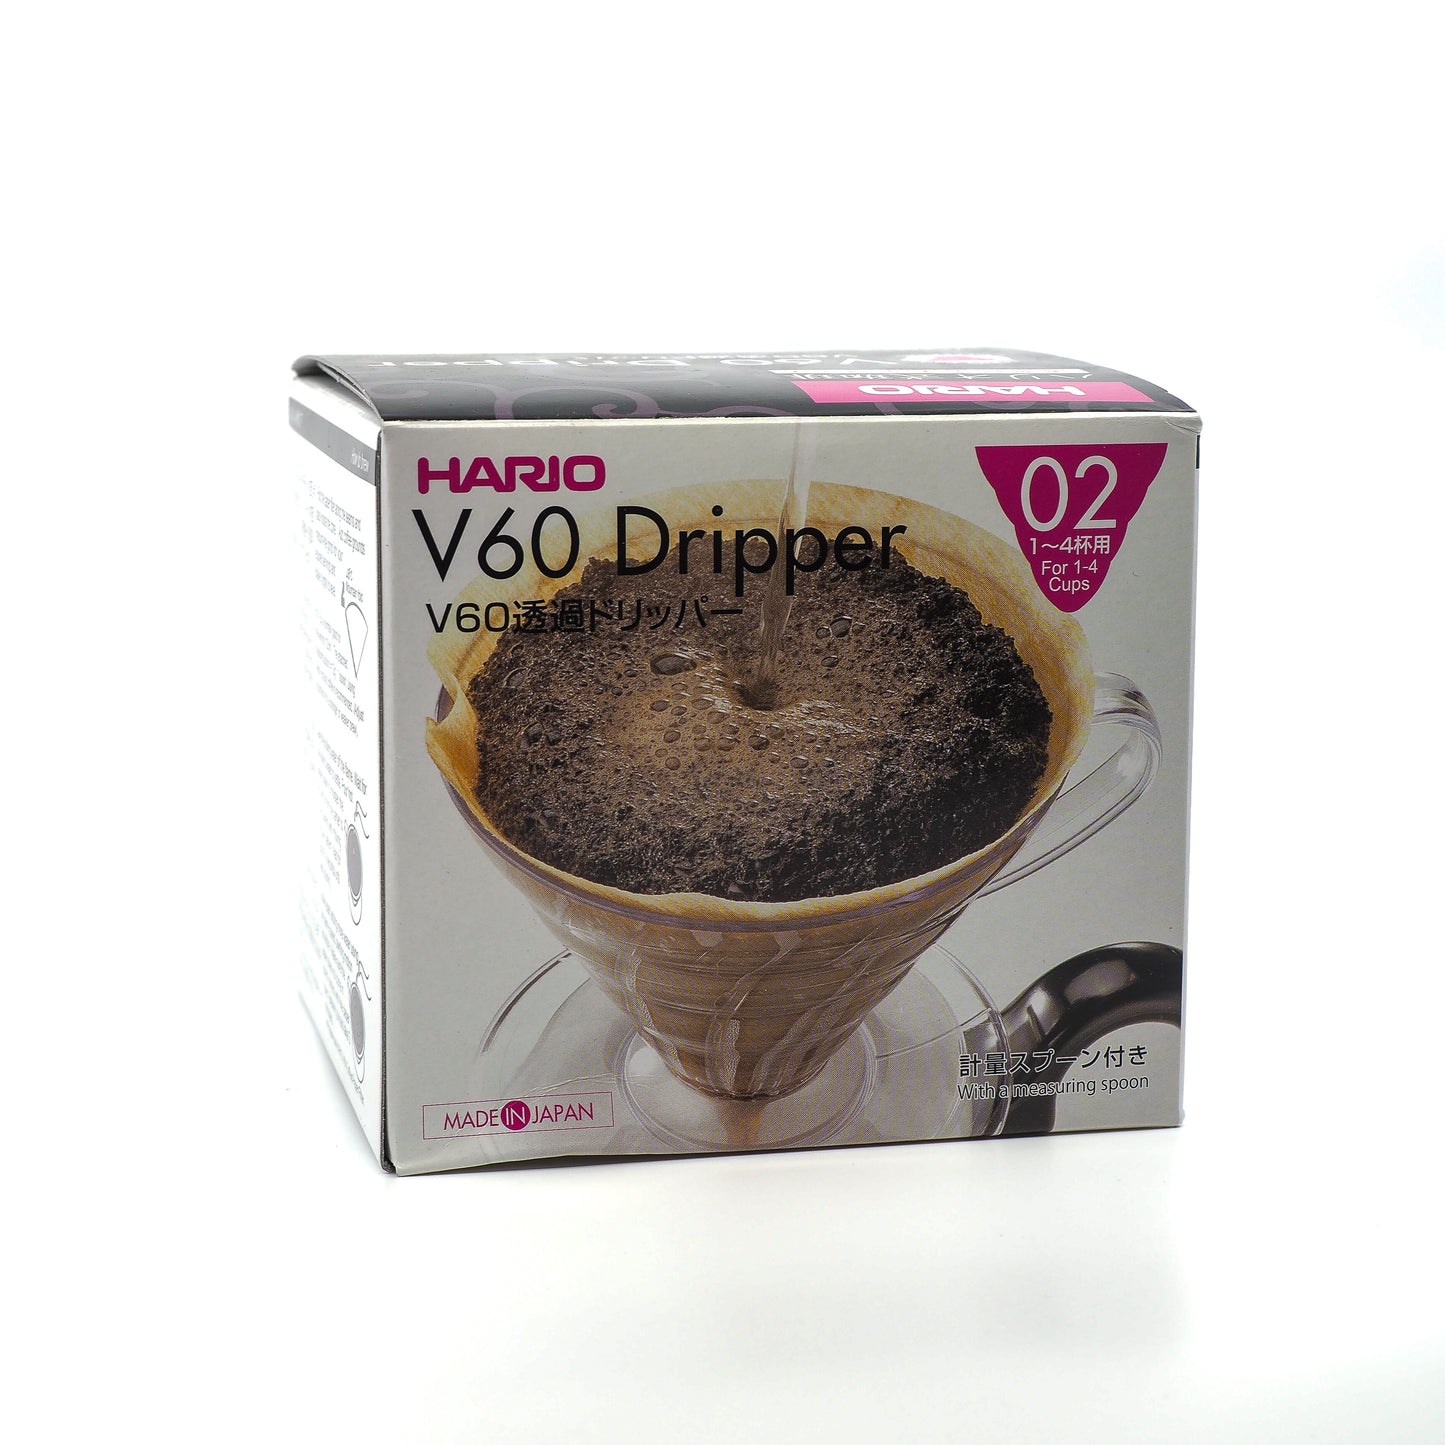 Hario V60 coffee dripper plastic in white box